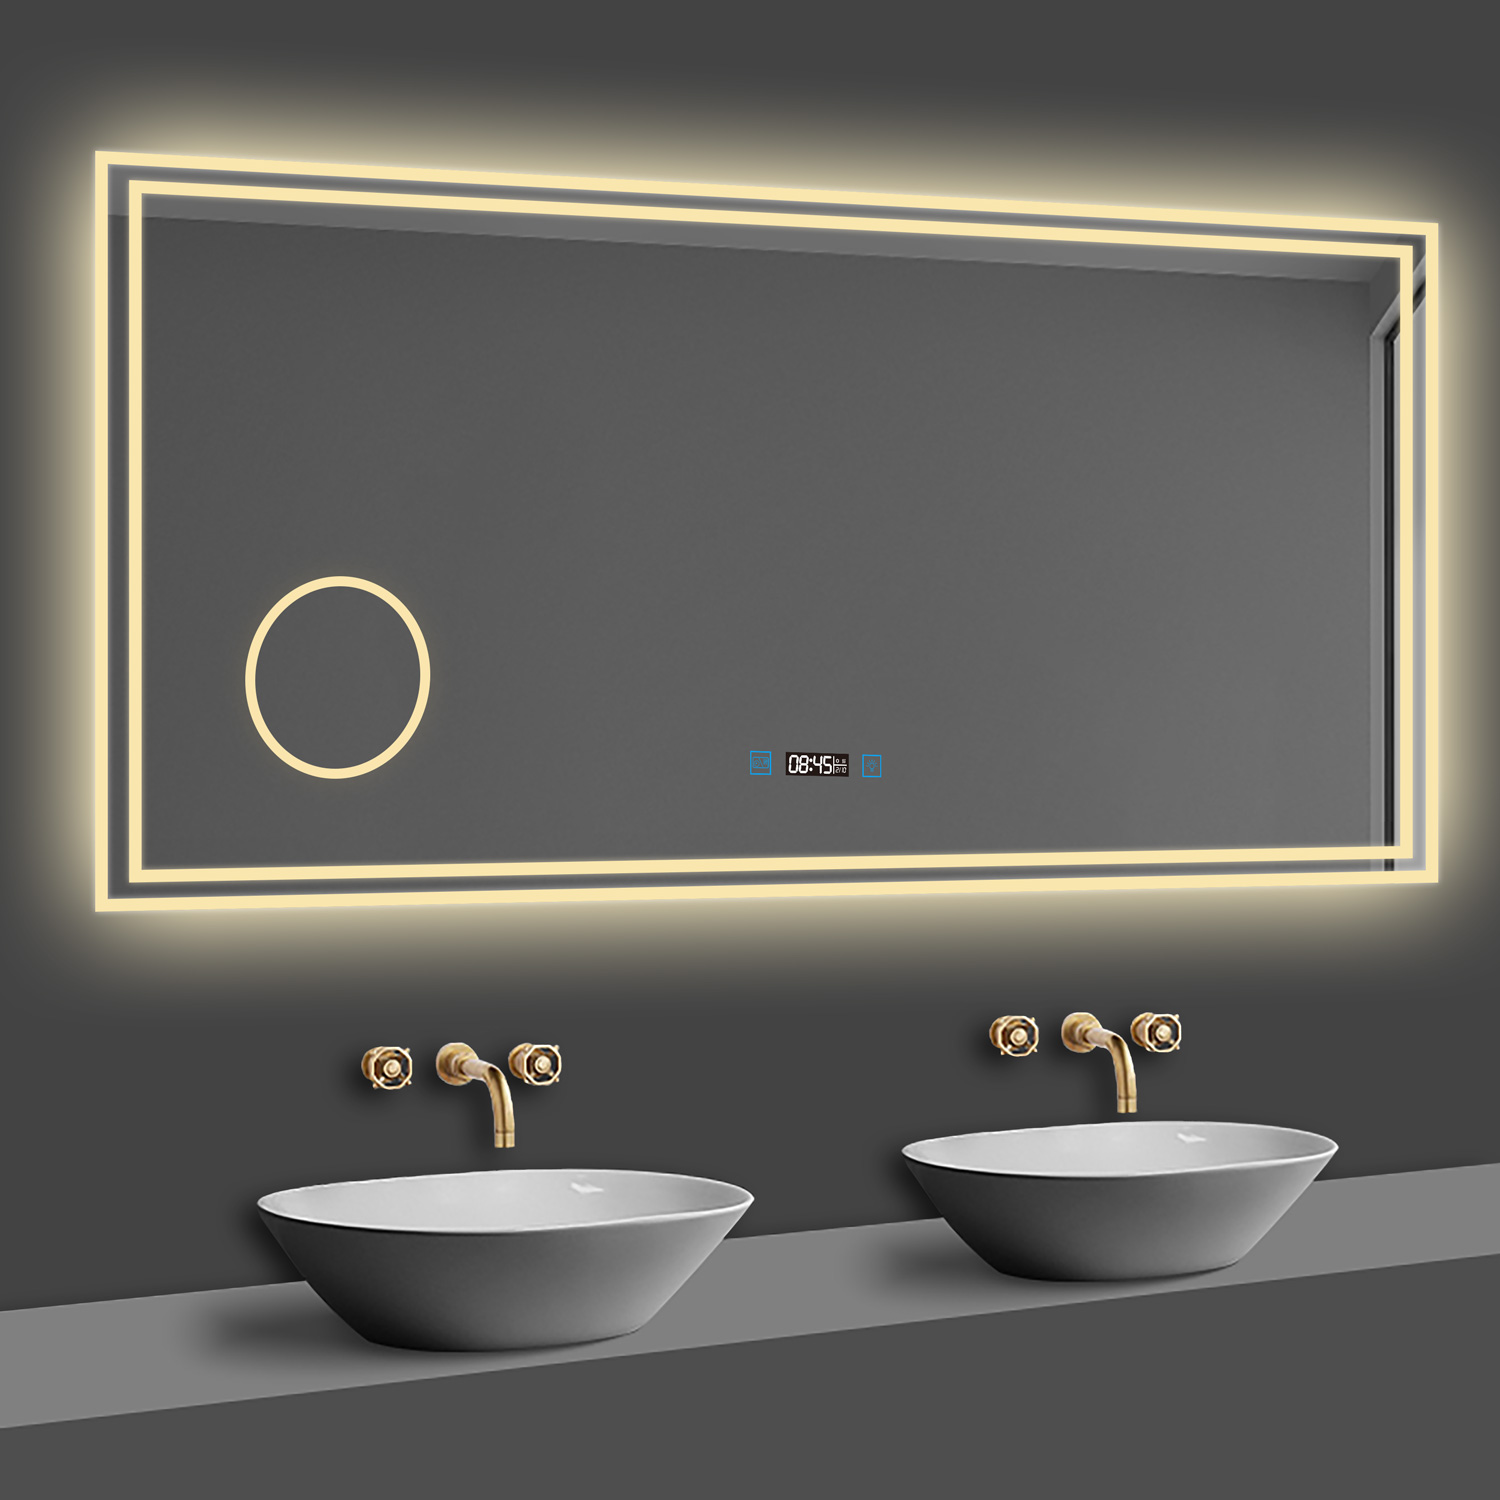 LED Badspiegel 140×80cm Uhr, Touch, Beschlagfrei, 3 Lichtfarbe 2700-6500K ,3x Lupe,Dimmbar,Wandspiegel